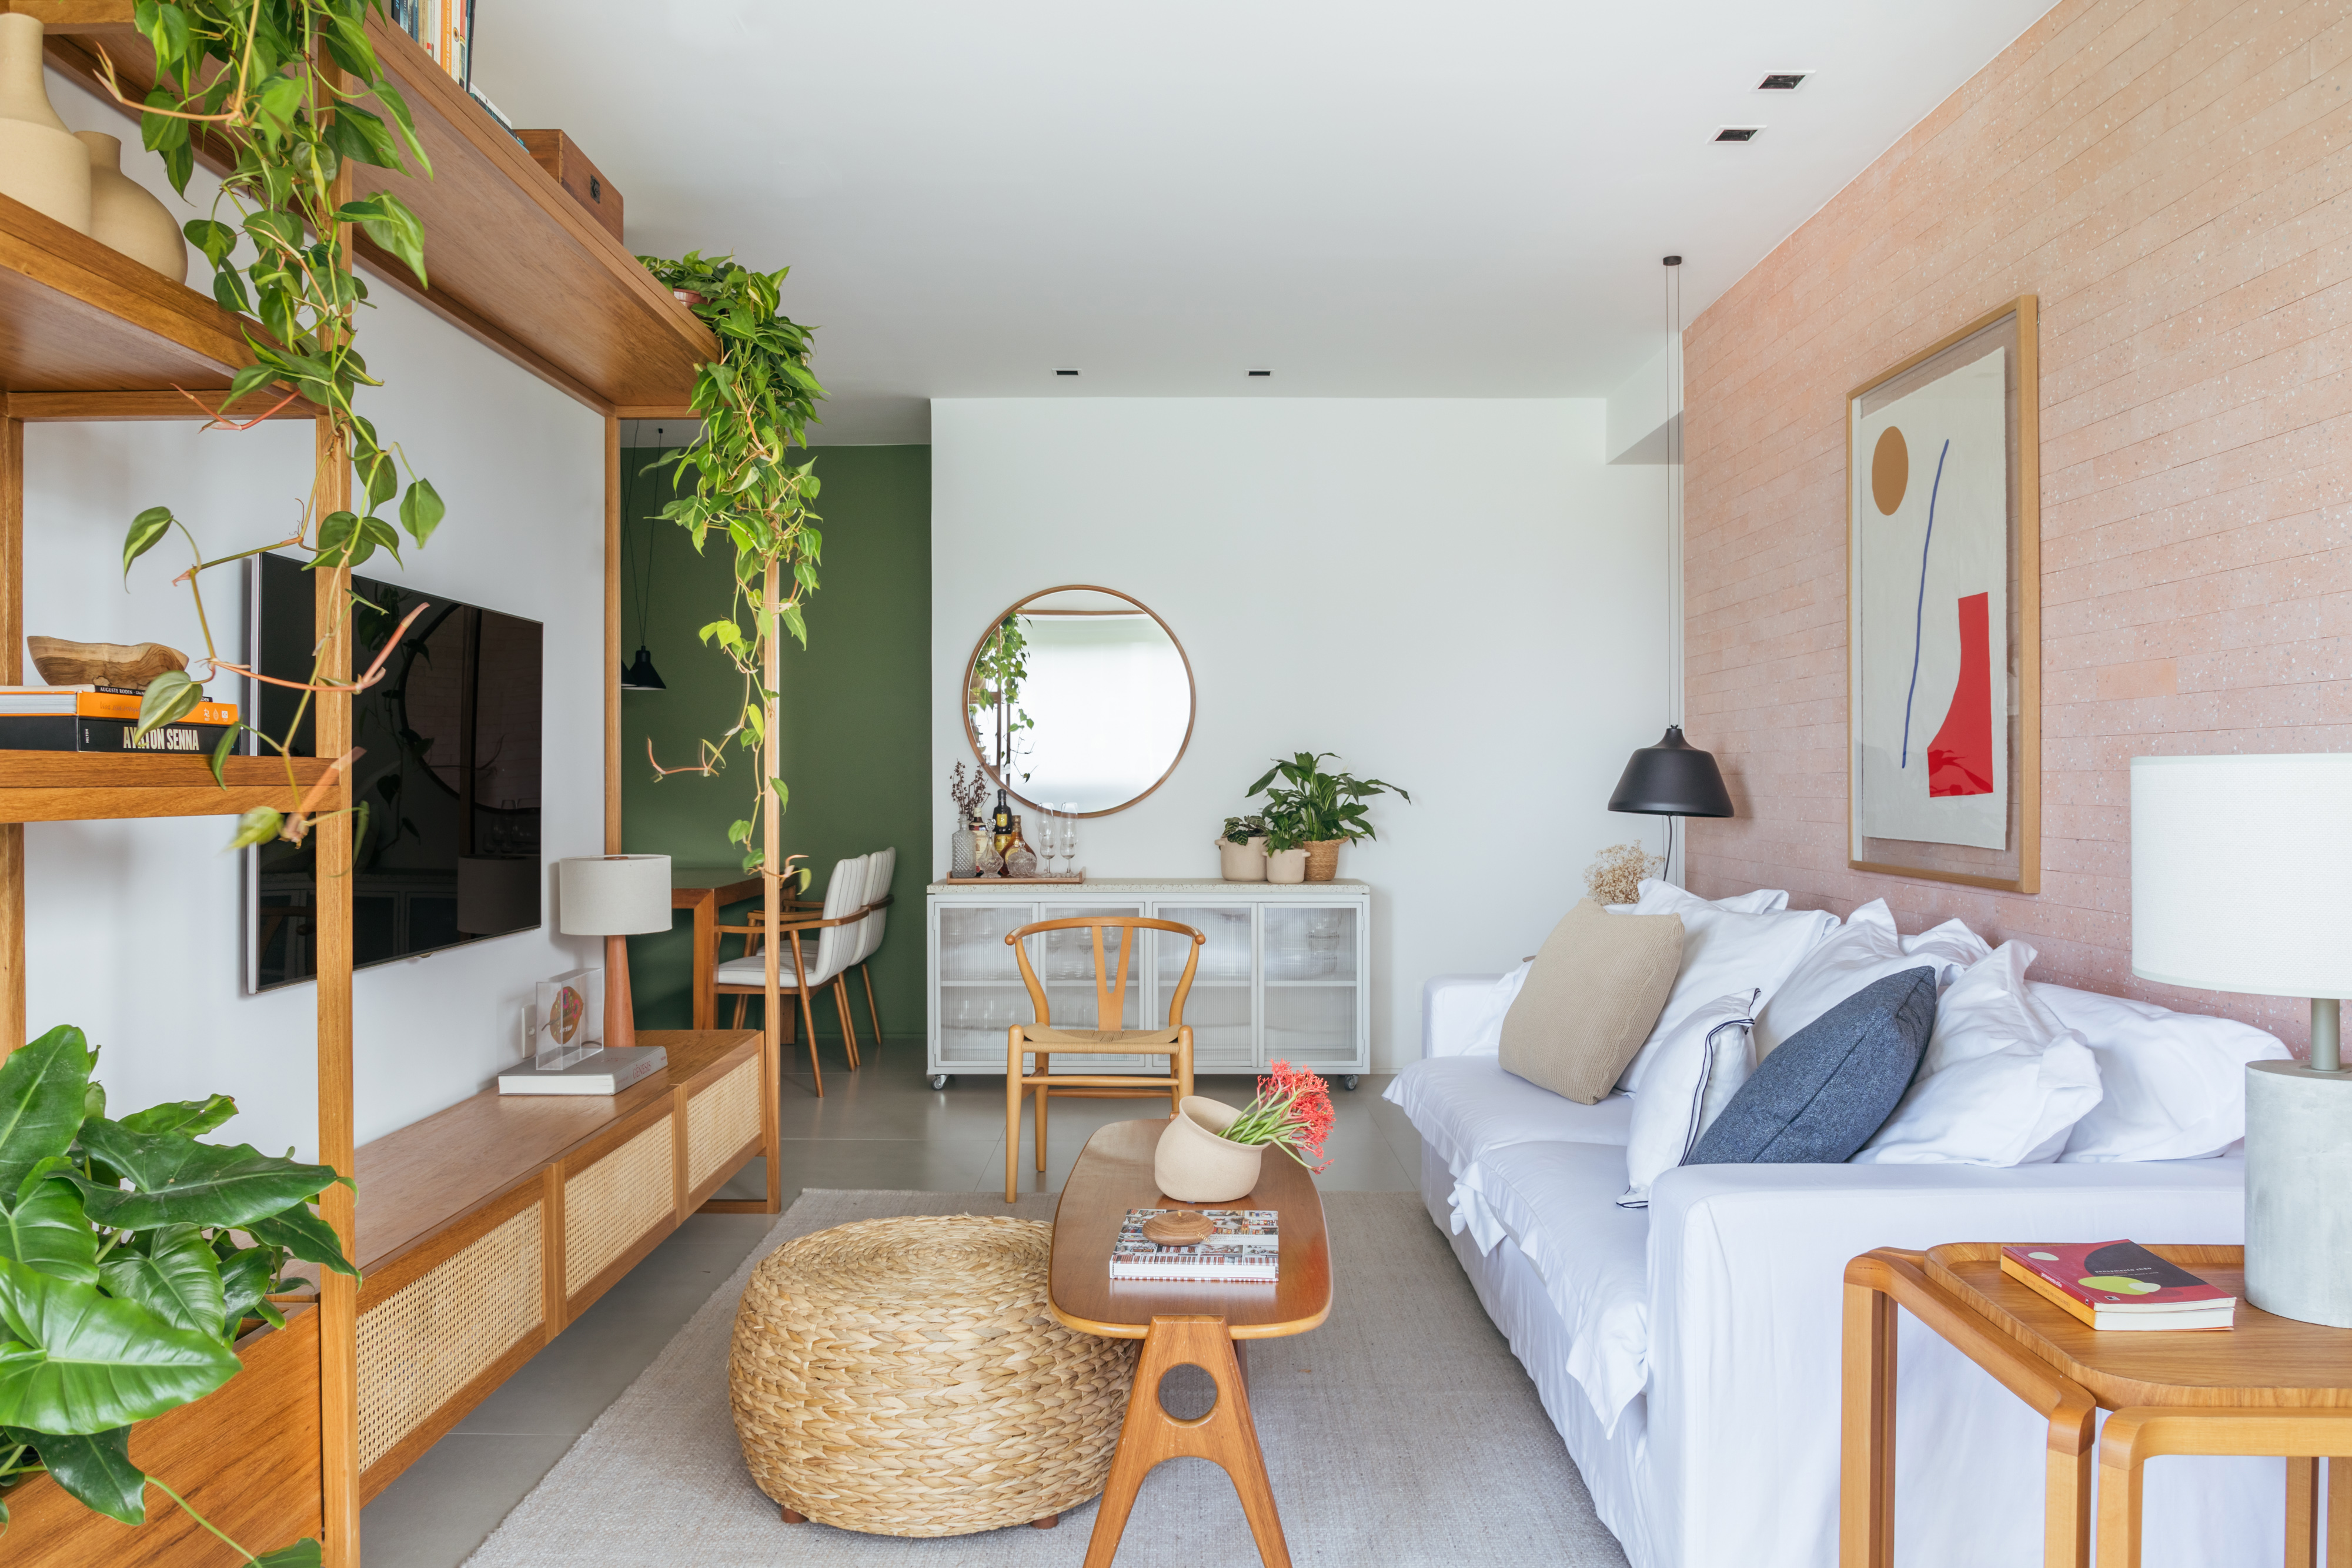 Decoração contemporânea cozy dá ar de casa para apê de 100 m². Projeto de Studio A+G. Na foto, sala de estar, espelho redondo, sofá, estante com palhinha.